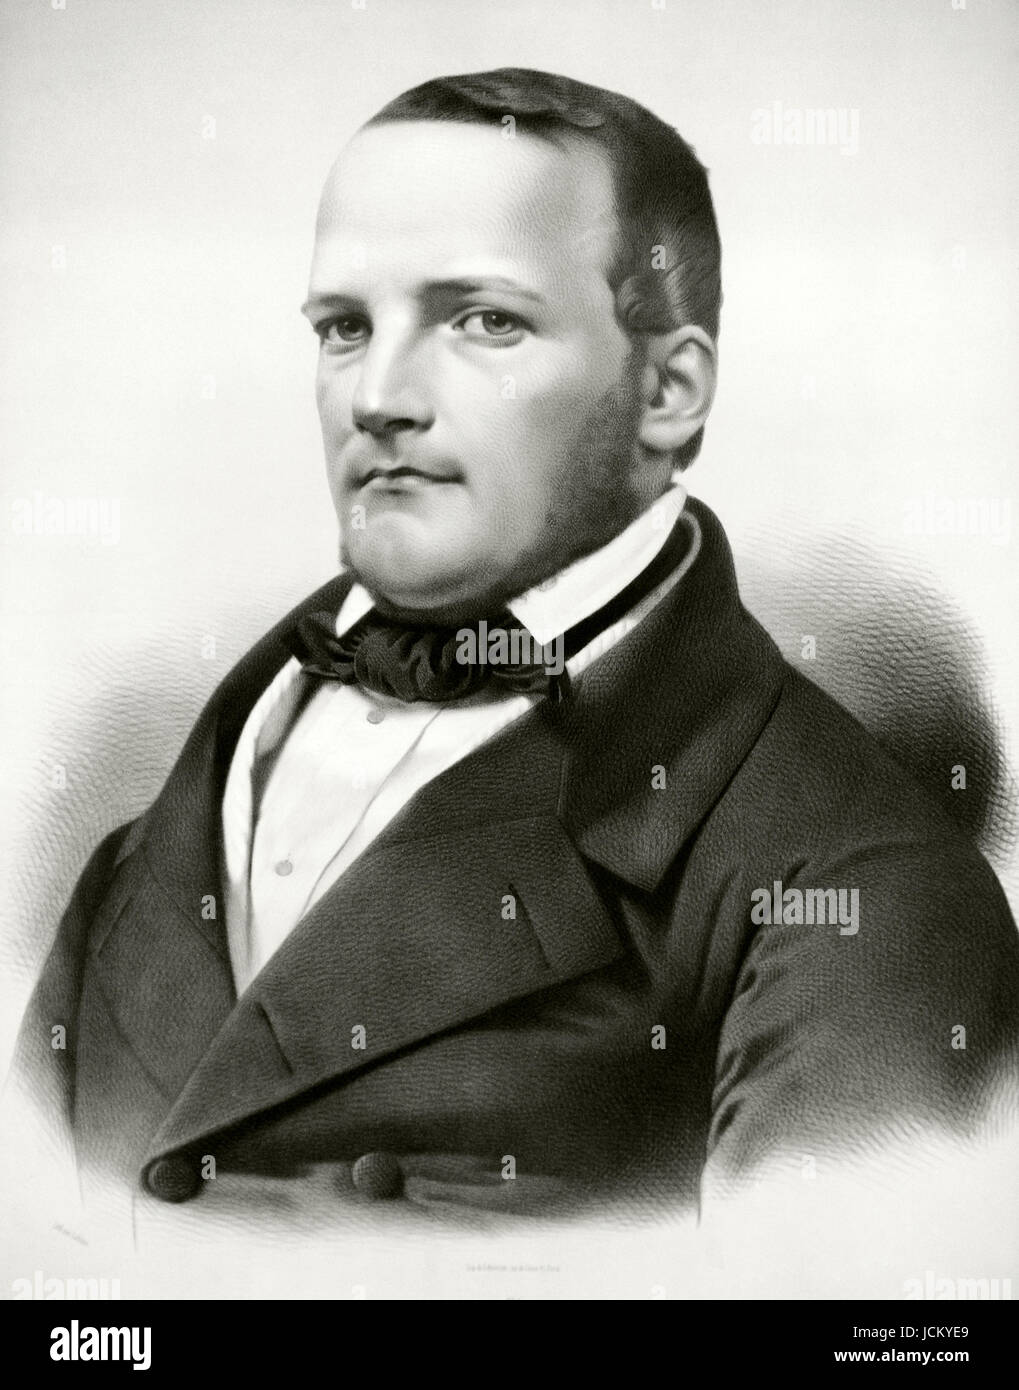 Stanisław Moniuszko (1819-1872). Polnischer Komponist, Dirigent und Lehrer. Porträt. Kupferstich von Adolphe Lafosse (1810-1879). Stockfoto